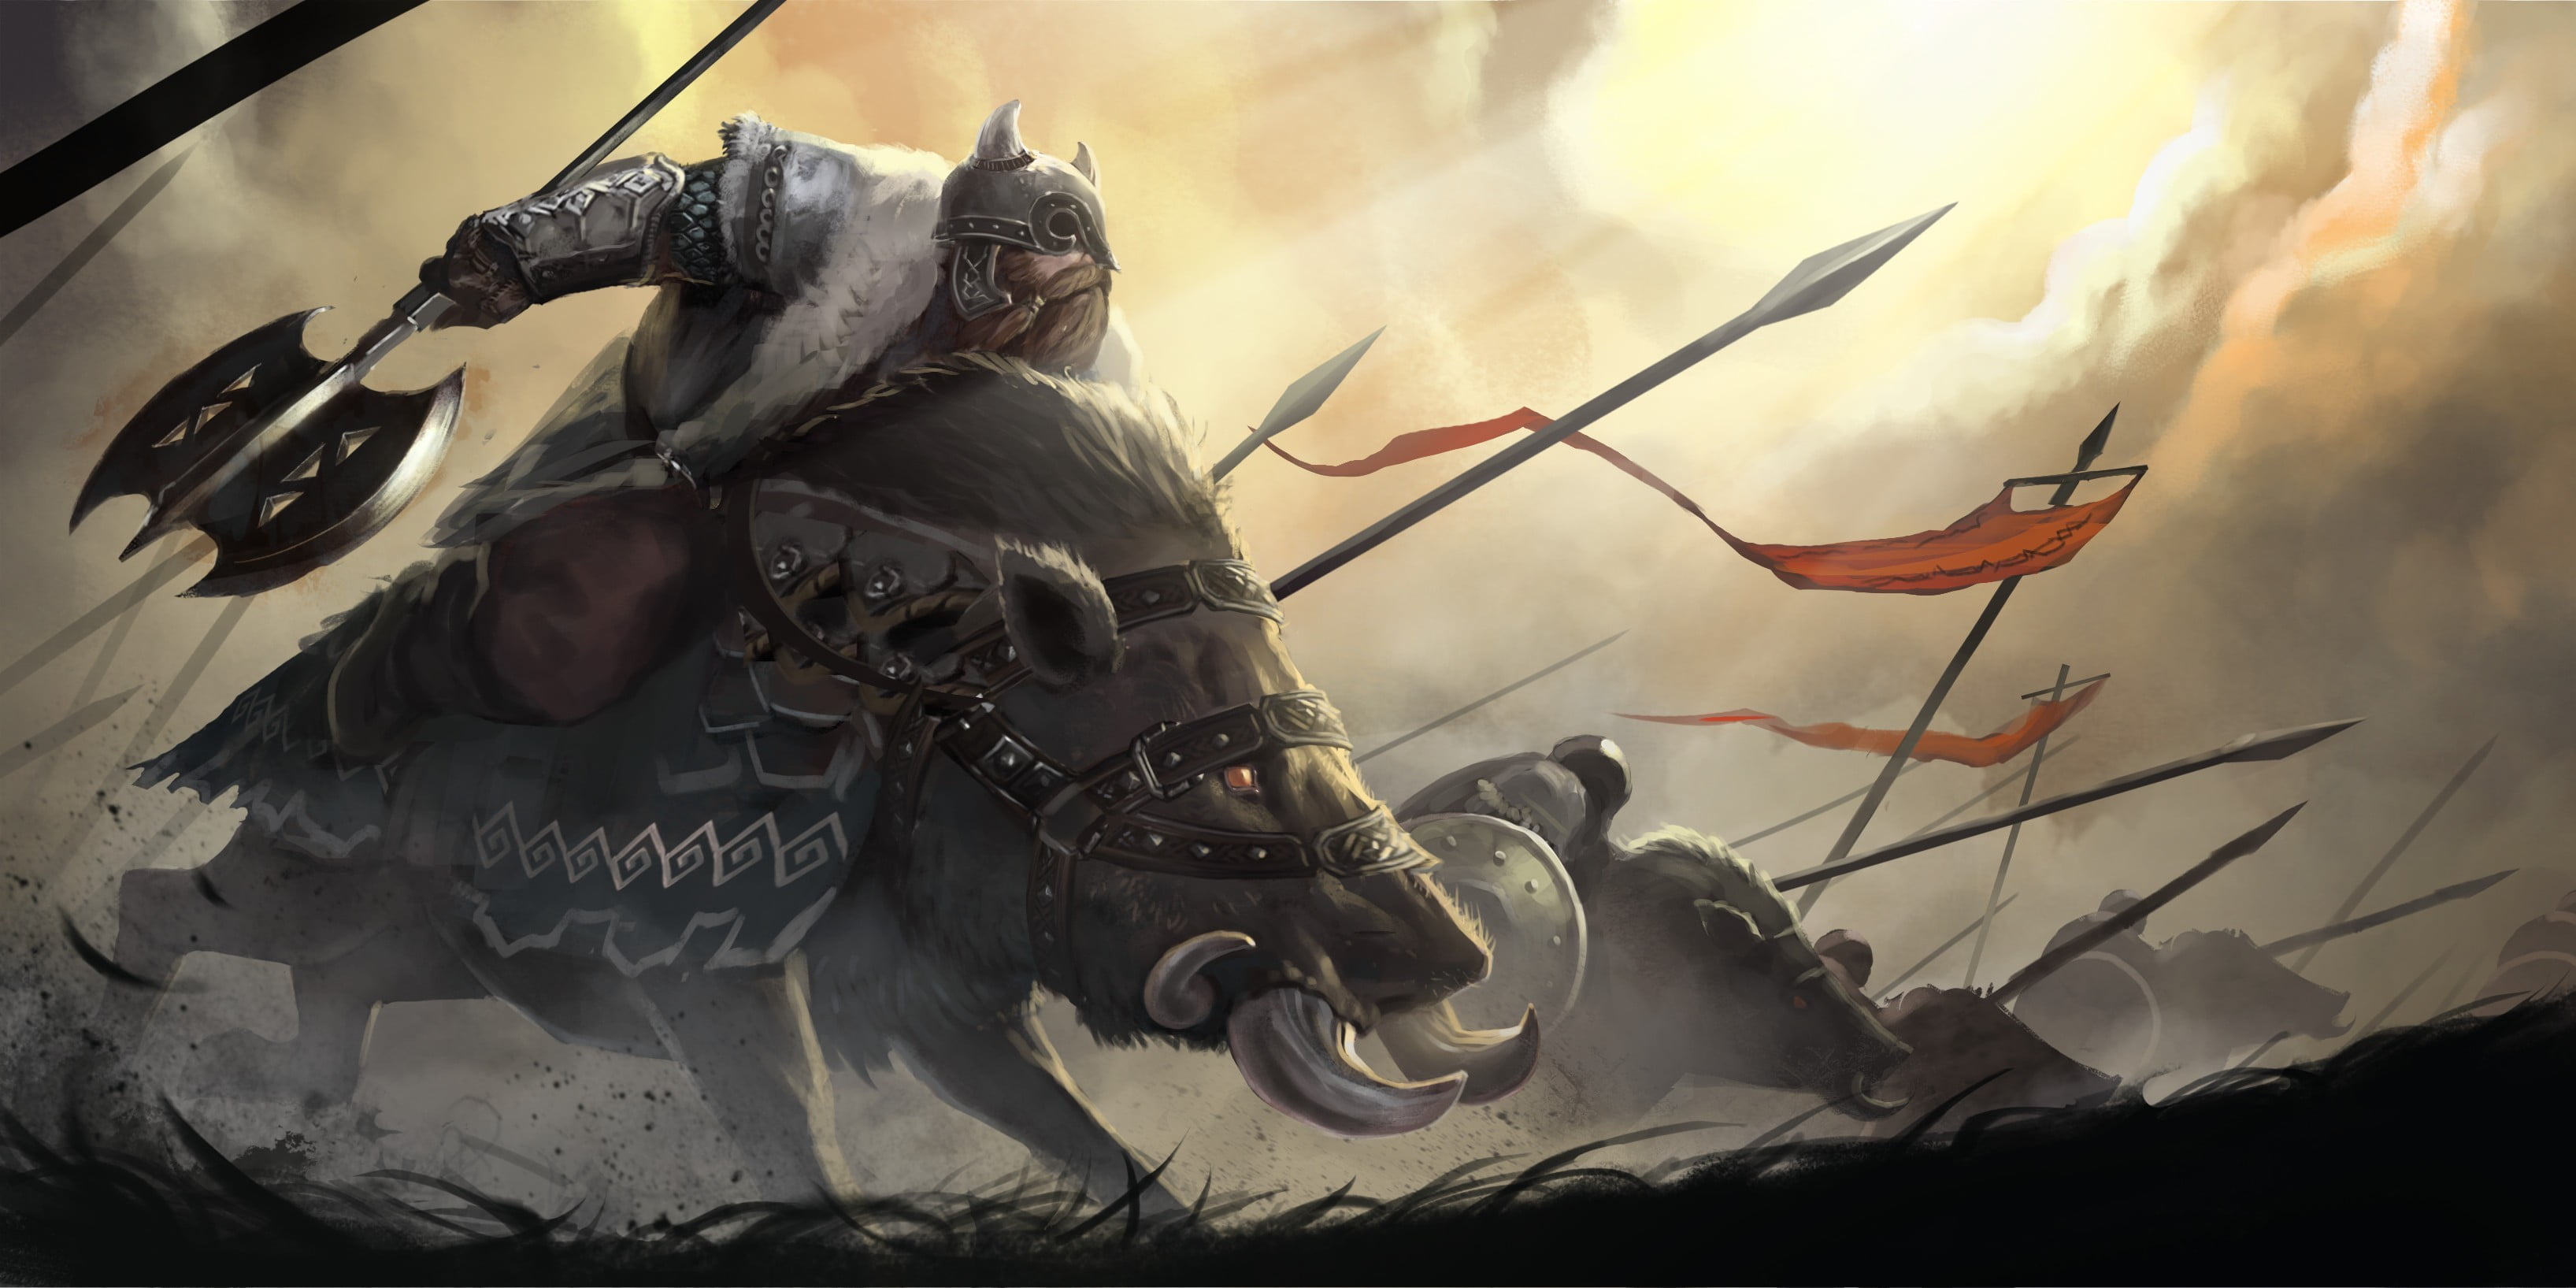 fantasy-art-warrior-riding-pig-wallpaper.jpg